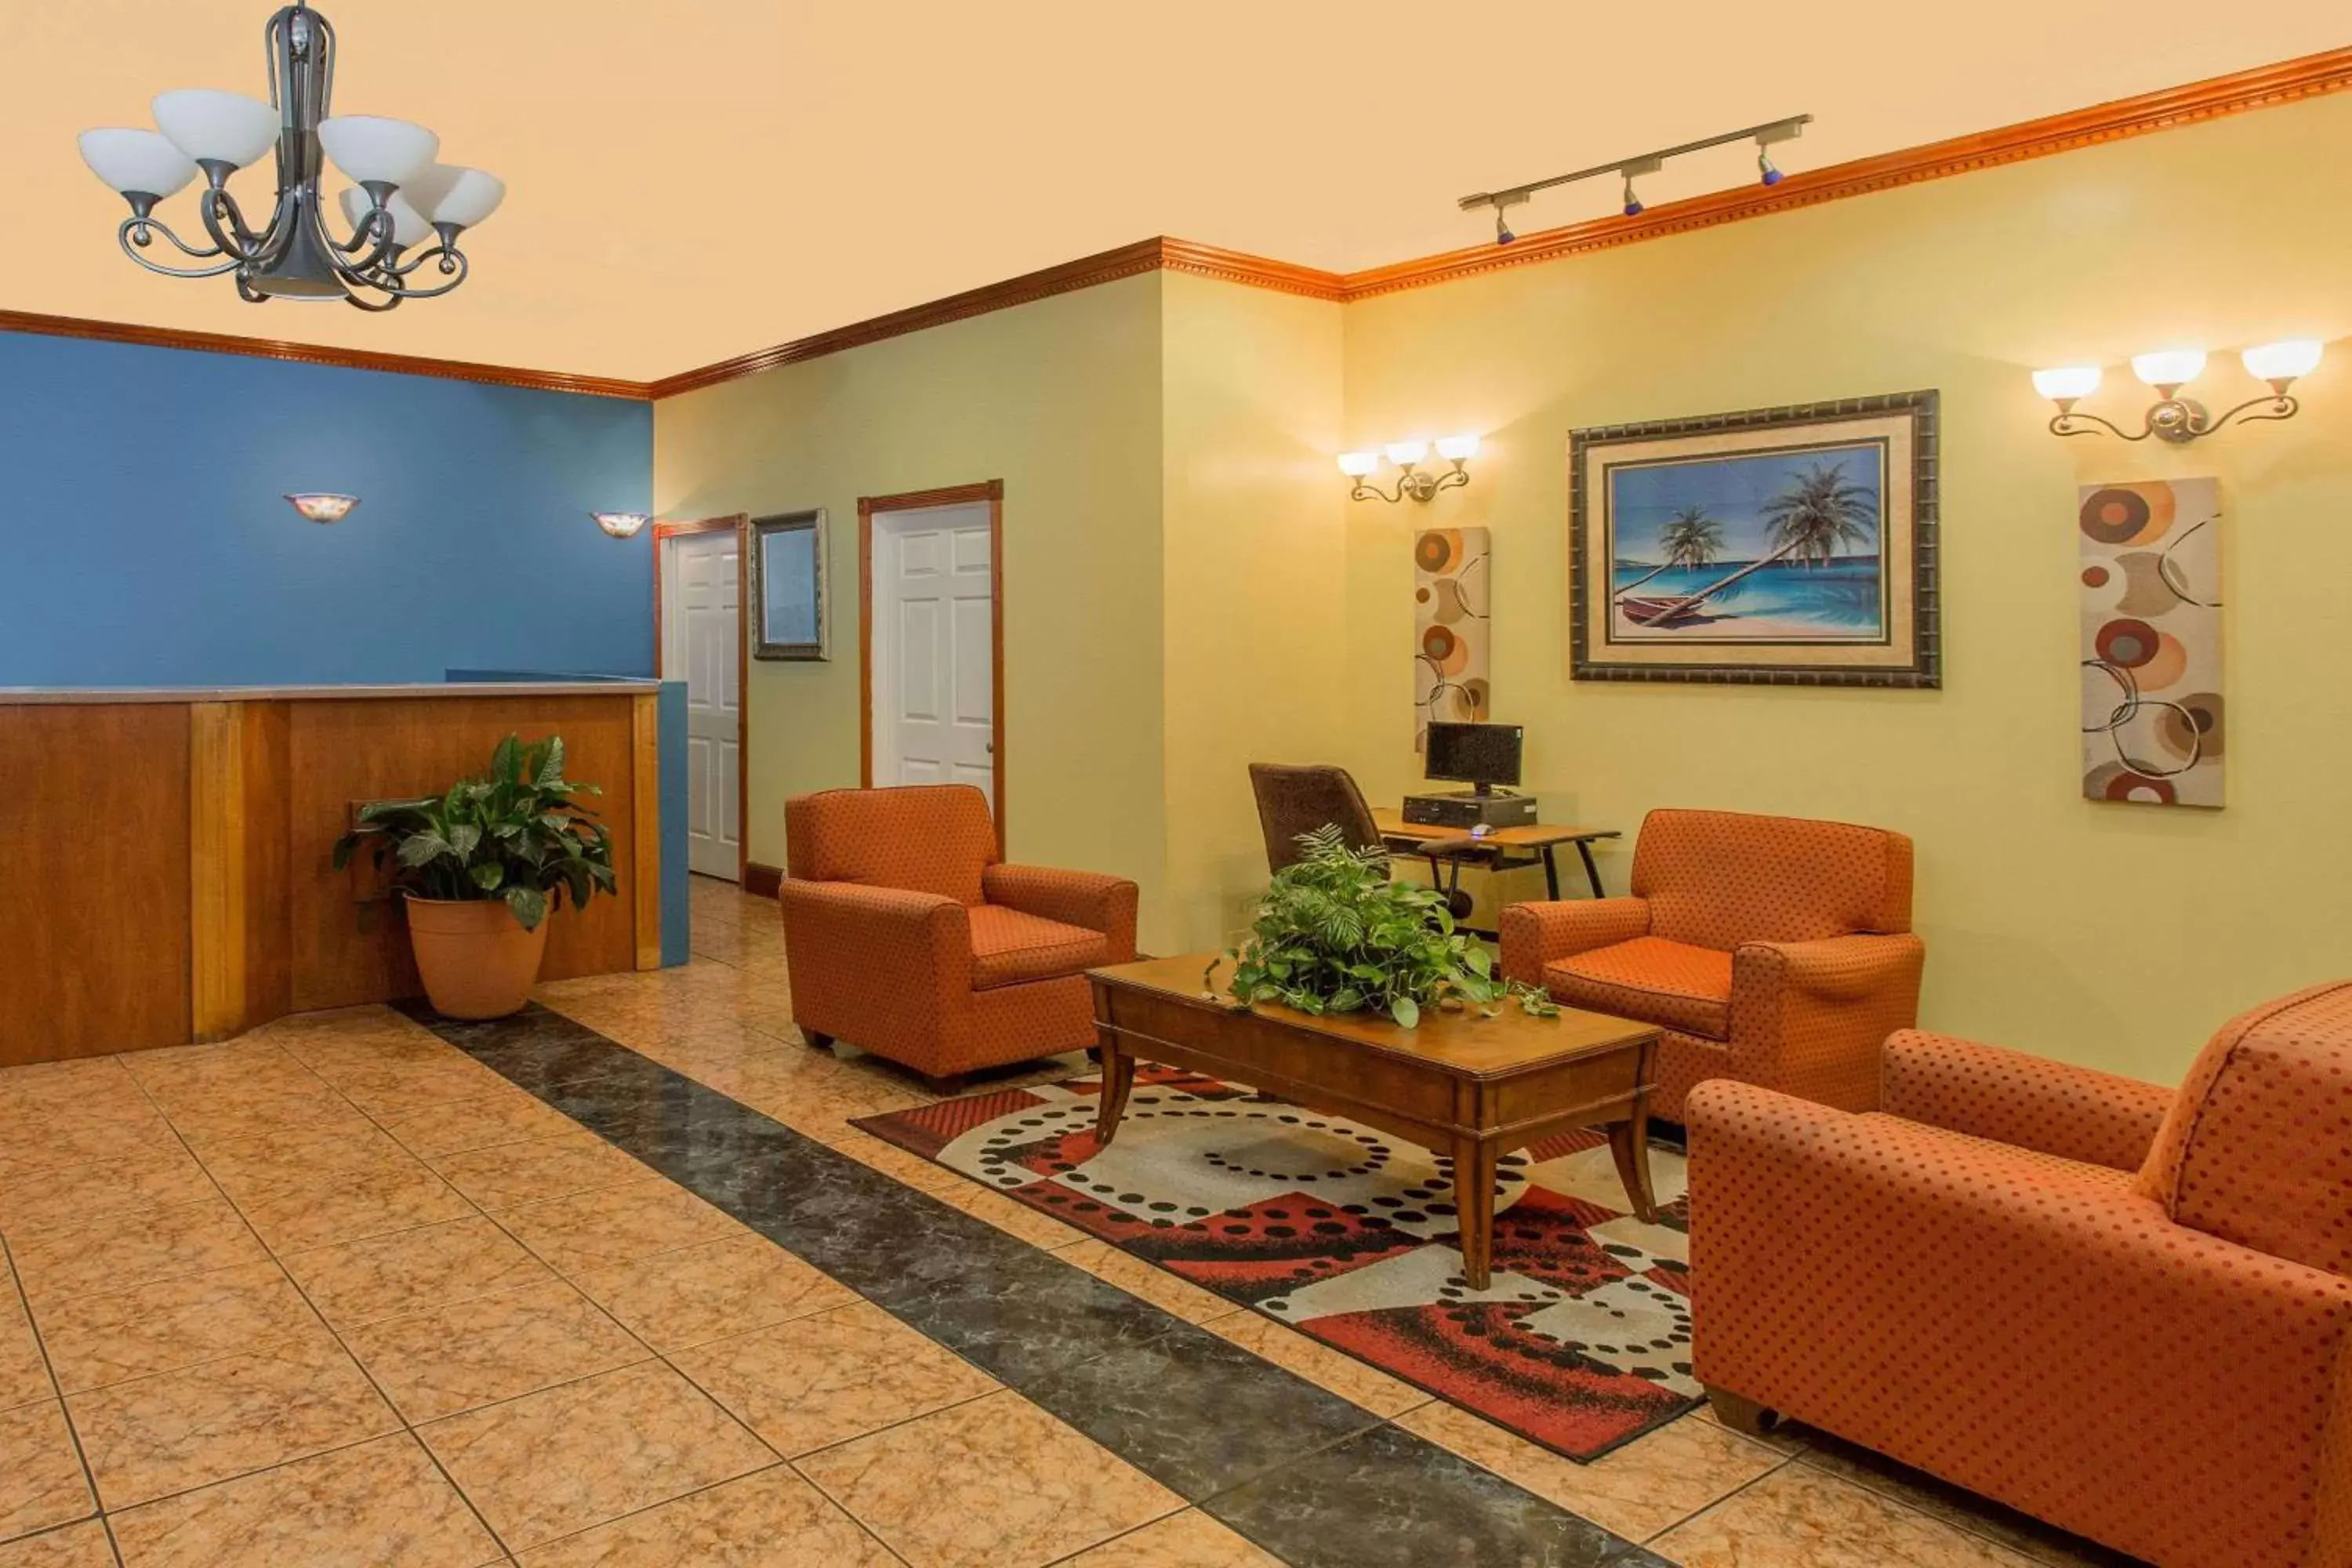 Lobby or reception, Lobby/Reception in Days Inn by Wyndham Fort Myers